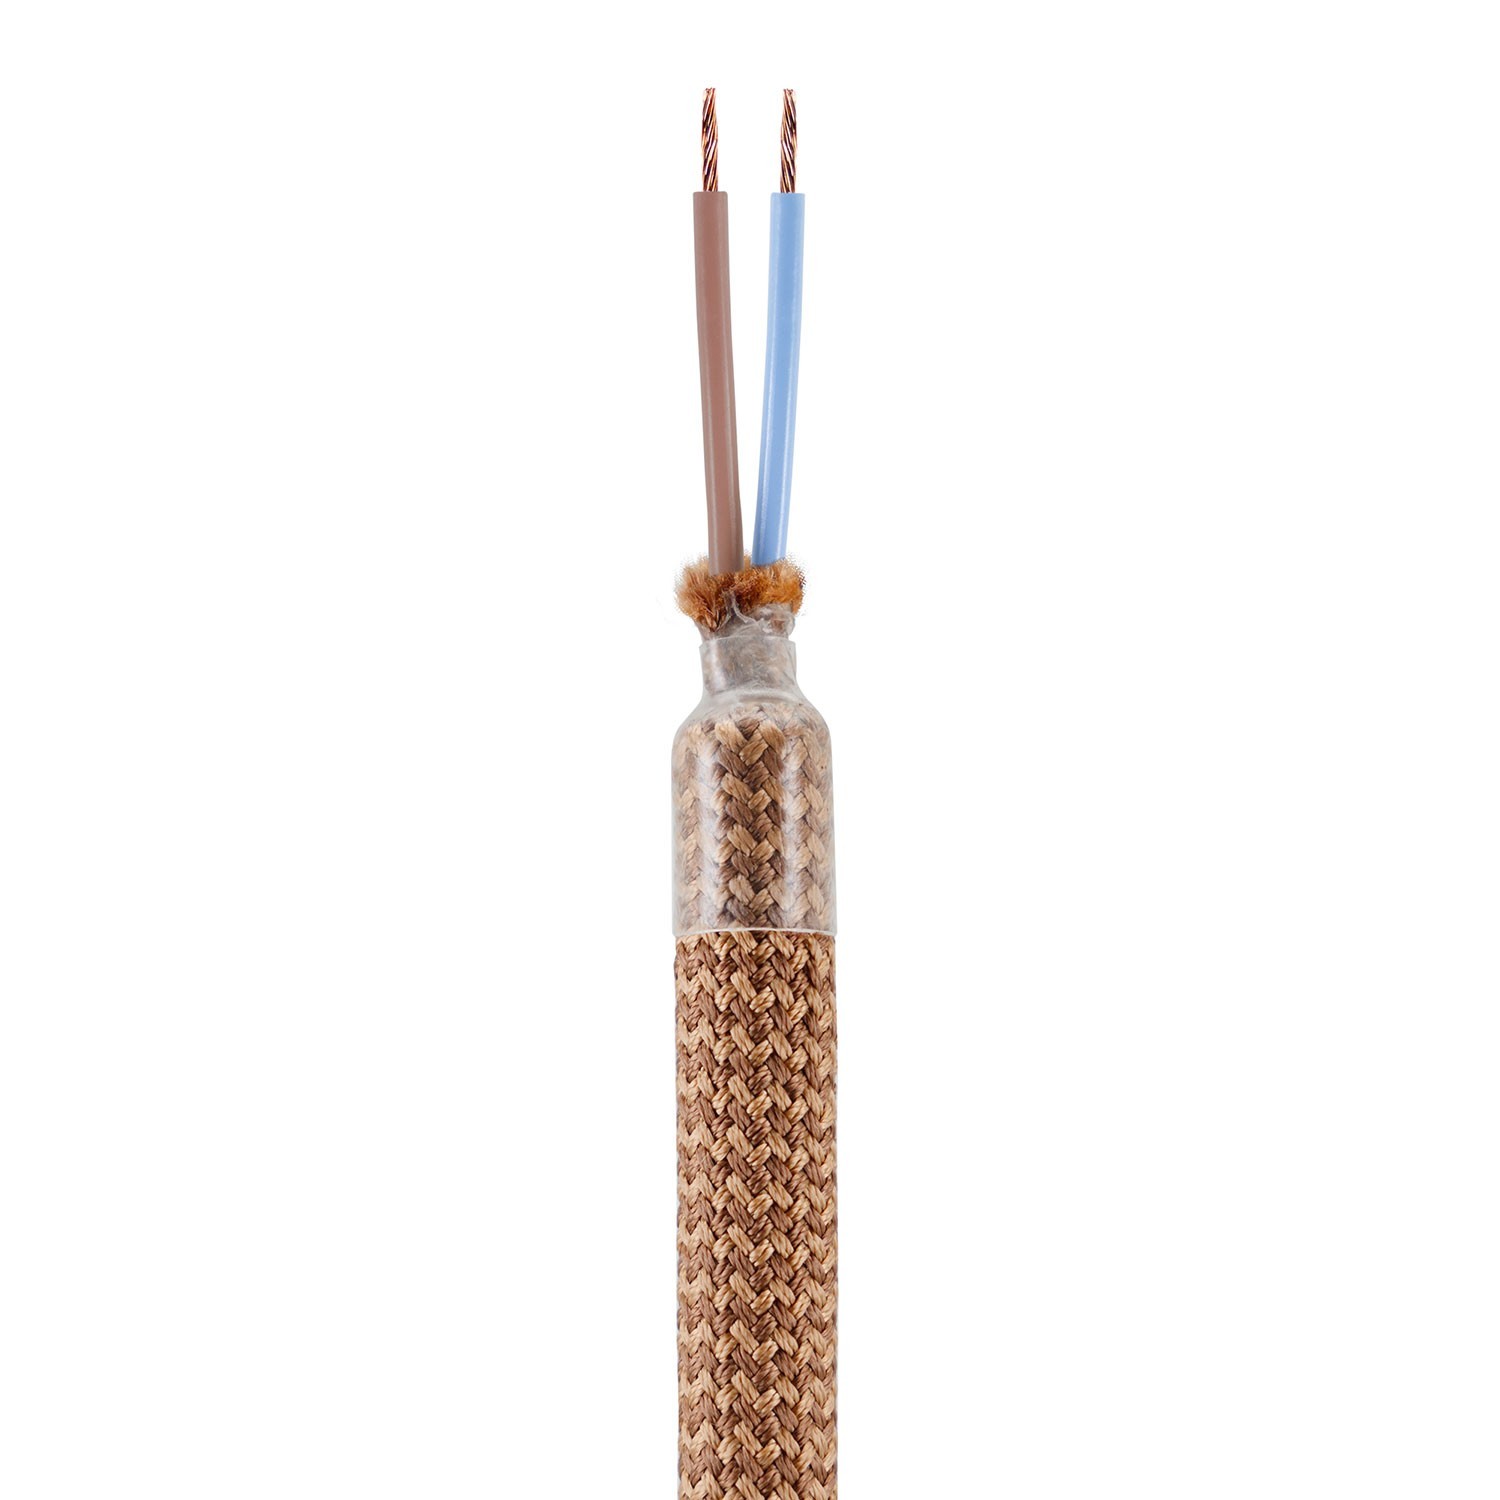 Kit Creative Flex flexibele buis bekleed met koperkleurige RM74 stof met metalen eindstukken